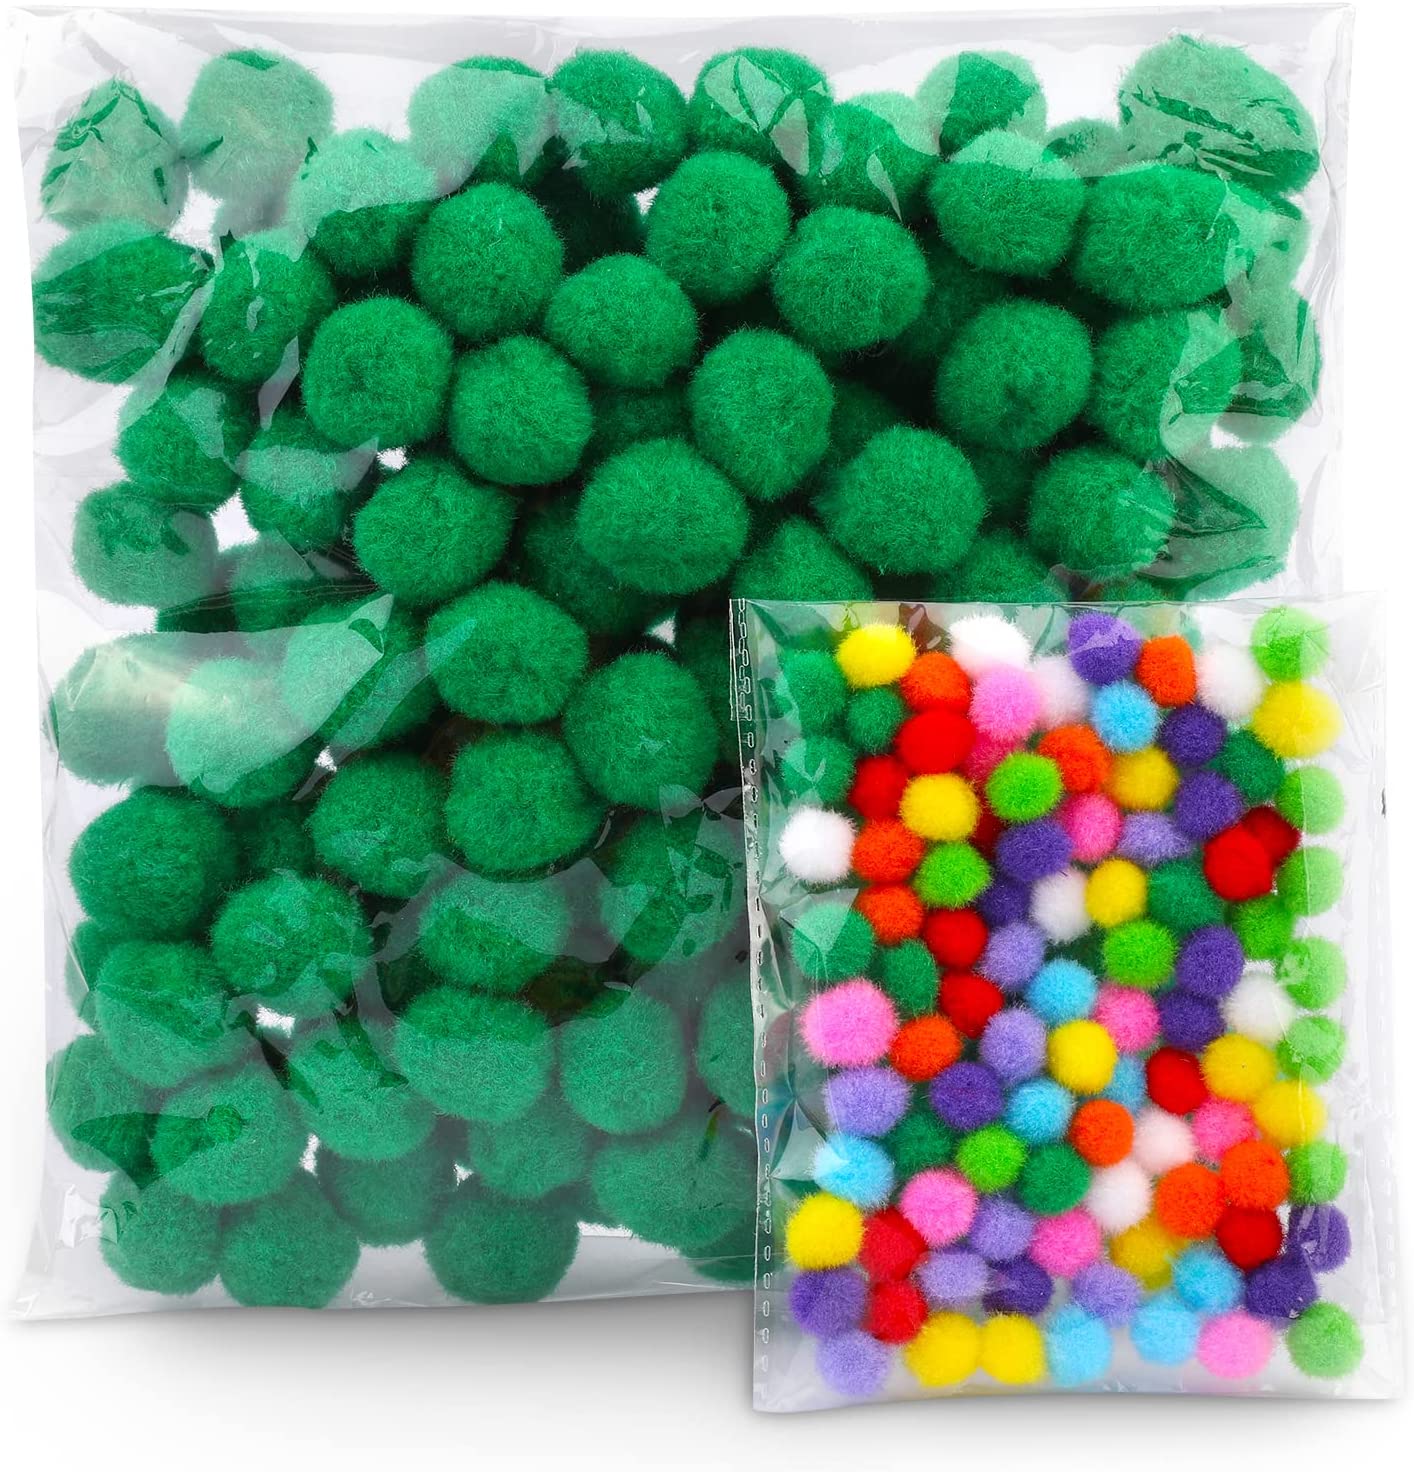 Caydo 500Pcs Red Pom Poms, 1Cm Small Pom Poms Balls For Kids Diy Art  Creative Crafts